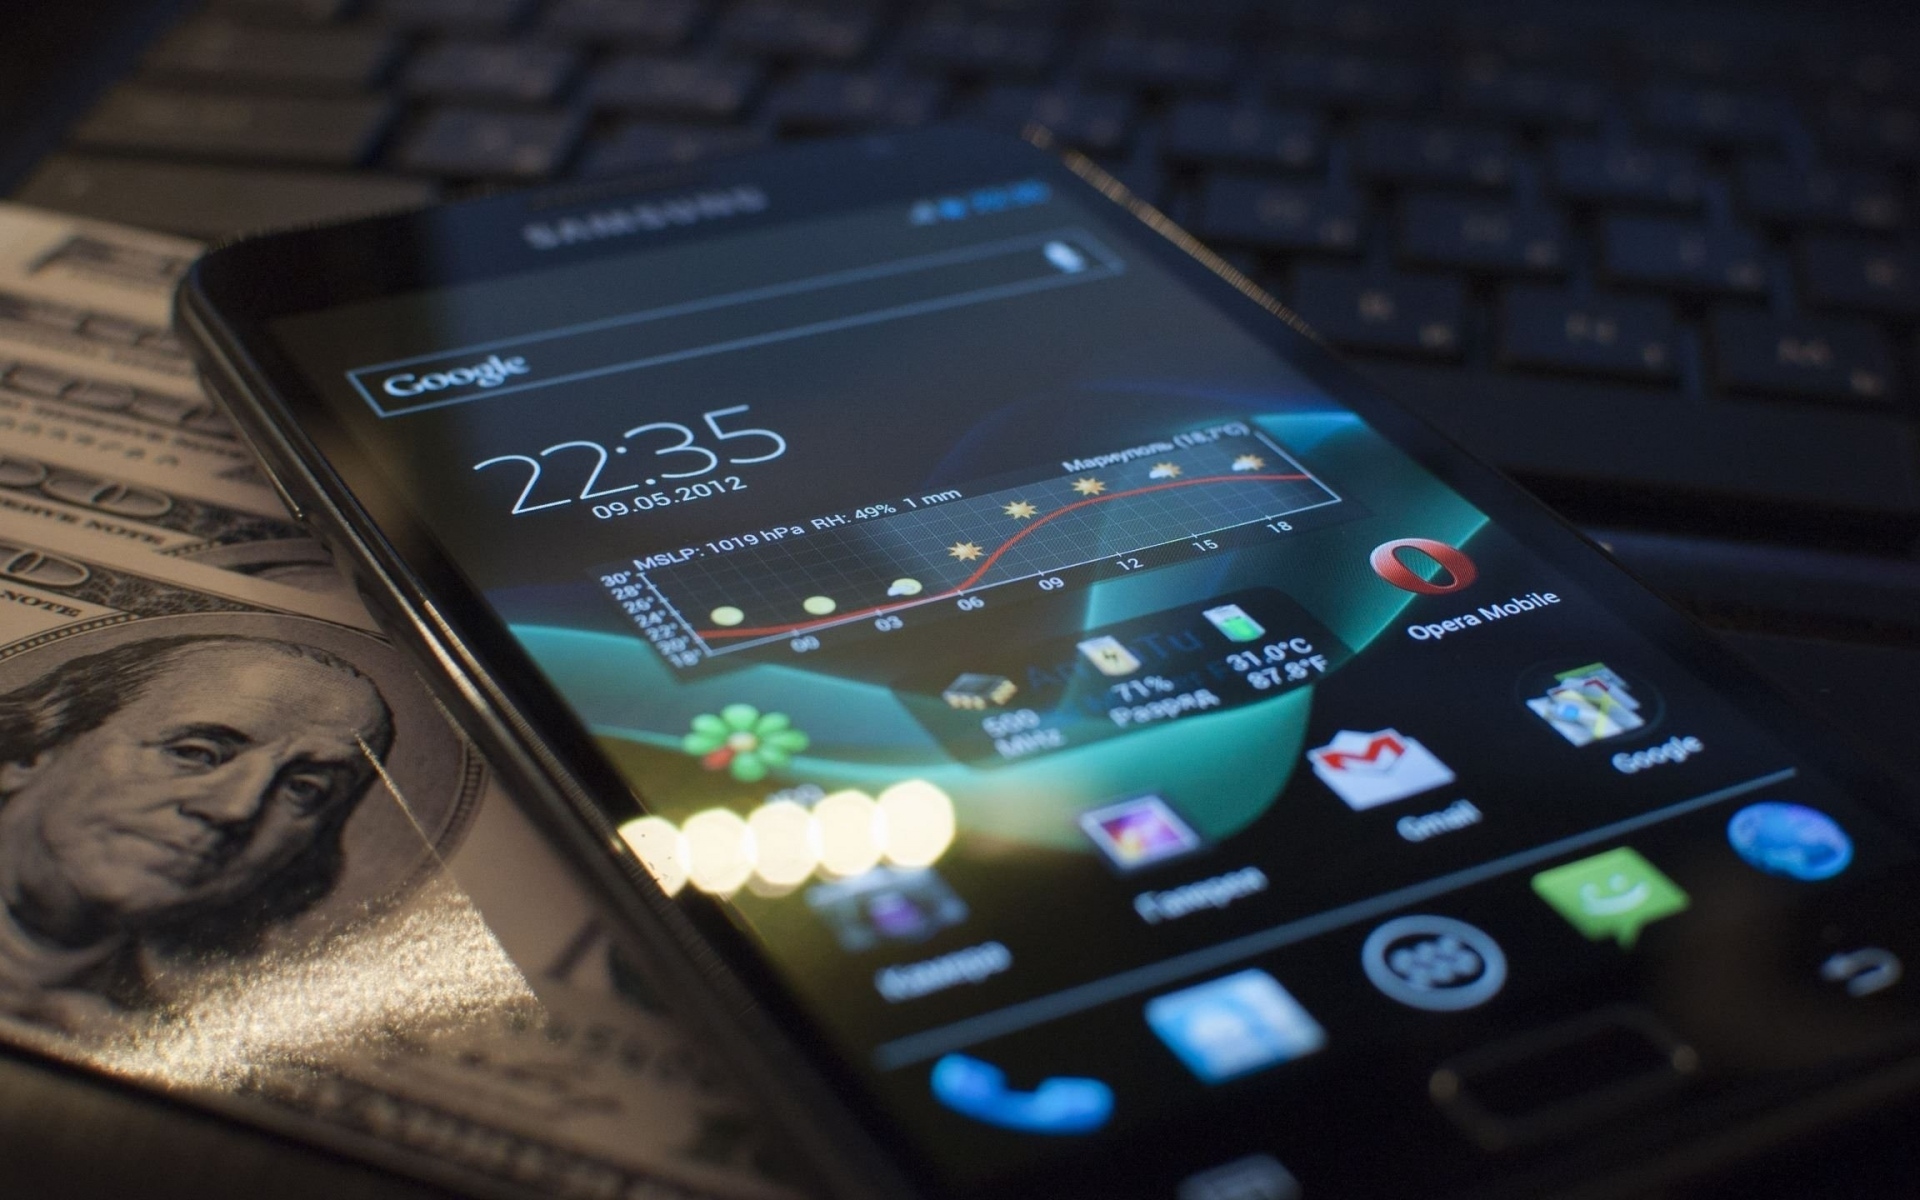 Картинки Примечание галактики Samsung, телефон, стиль, дисплей, сенсорный экран фото и обои на рабочий стол